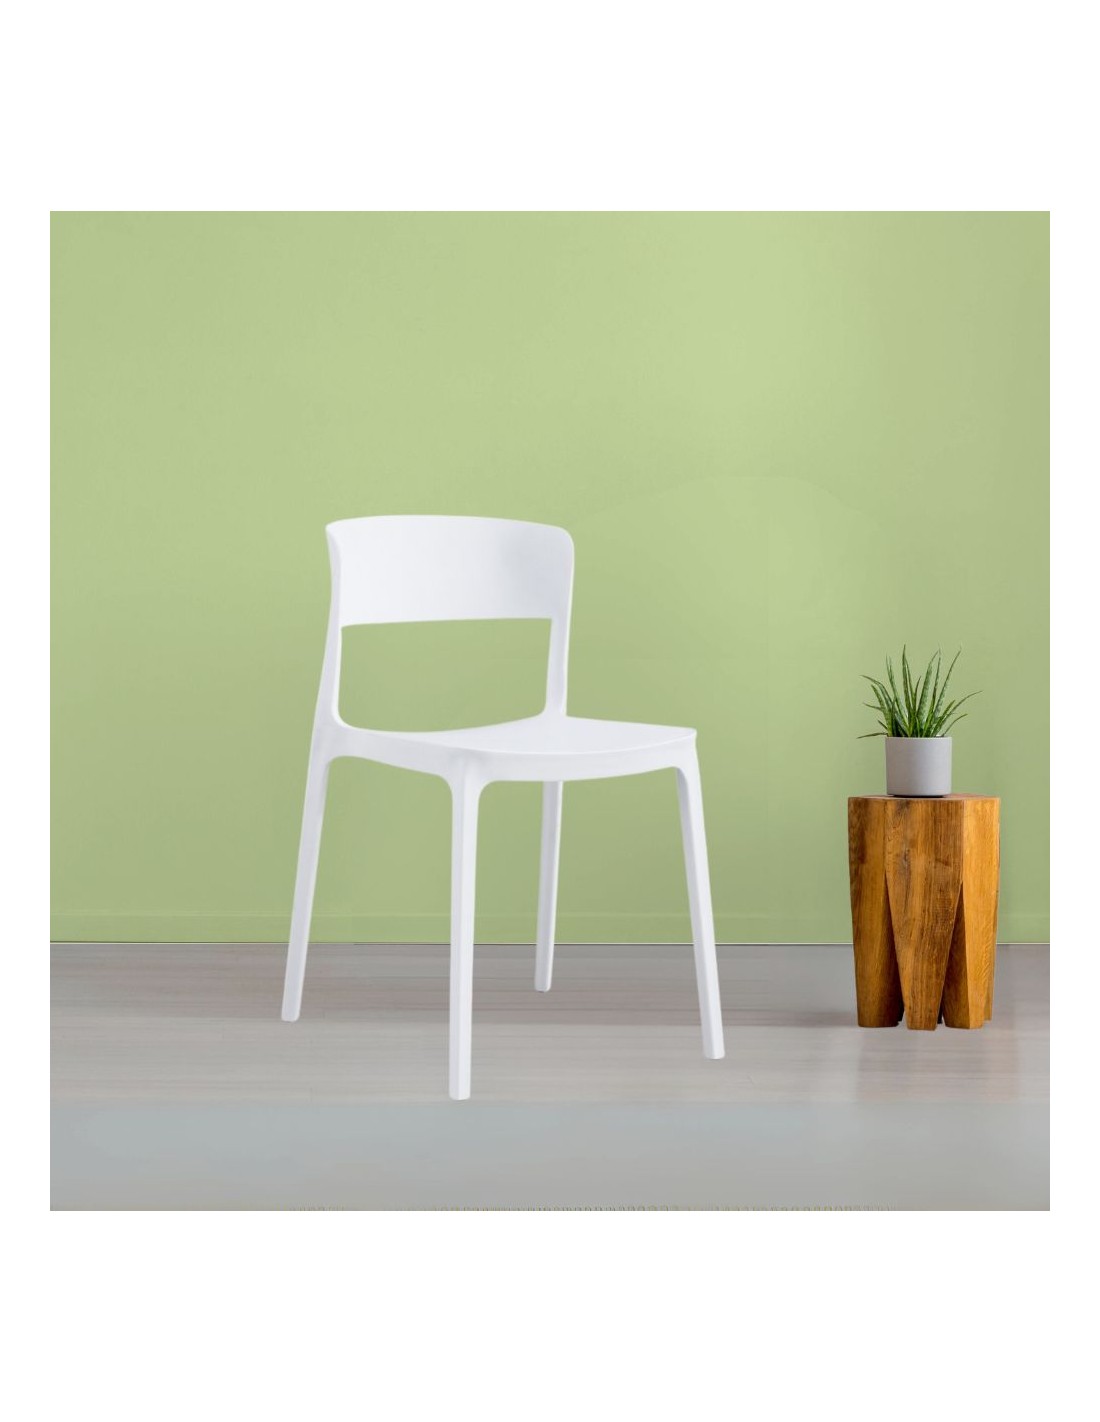 Sedia in polipropilene bianco design moderno Diaspro